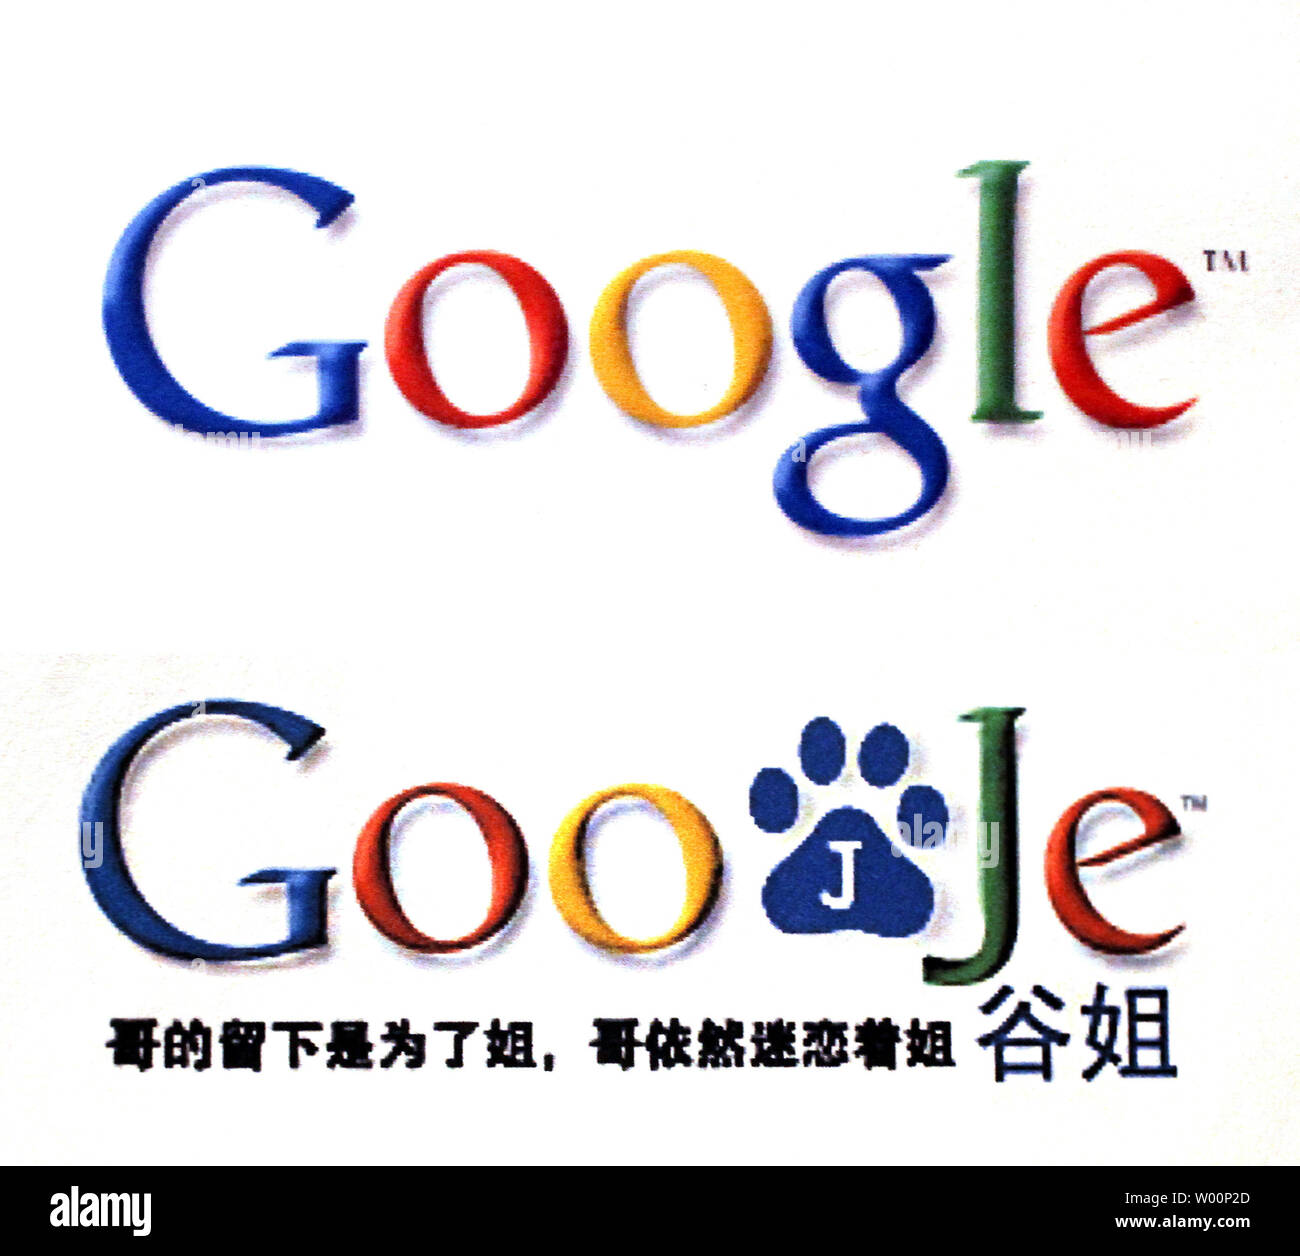 Une imitation site Web pour Google, Goojje, a émergé en Chine alors que le pays doit affronter le vrai Google sur ses opérateurs locaux à Beijing le 29 janvier 2010. Le nouveau Goojje les moteurs de recherche a été lancé en Chine après que Google a annoncé qu'il allait retirer du pays. Le logo de Goojje est une pièce sur Google's Chinese name 'Gu ge', de 'jie' pour, le mot chinois pour soeur plus âgée, pour 'ge', ce qui signifie grand frère. 'Soeur était très heureux lorsque frère a renoncé à l'idée de départ et sont restés pour sœur, l'inscription des explication sur le site web se lit, se moquant de Google Banque D'Images